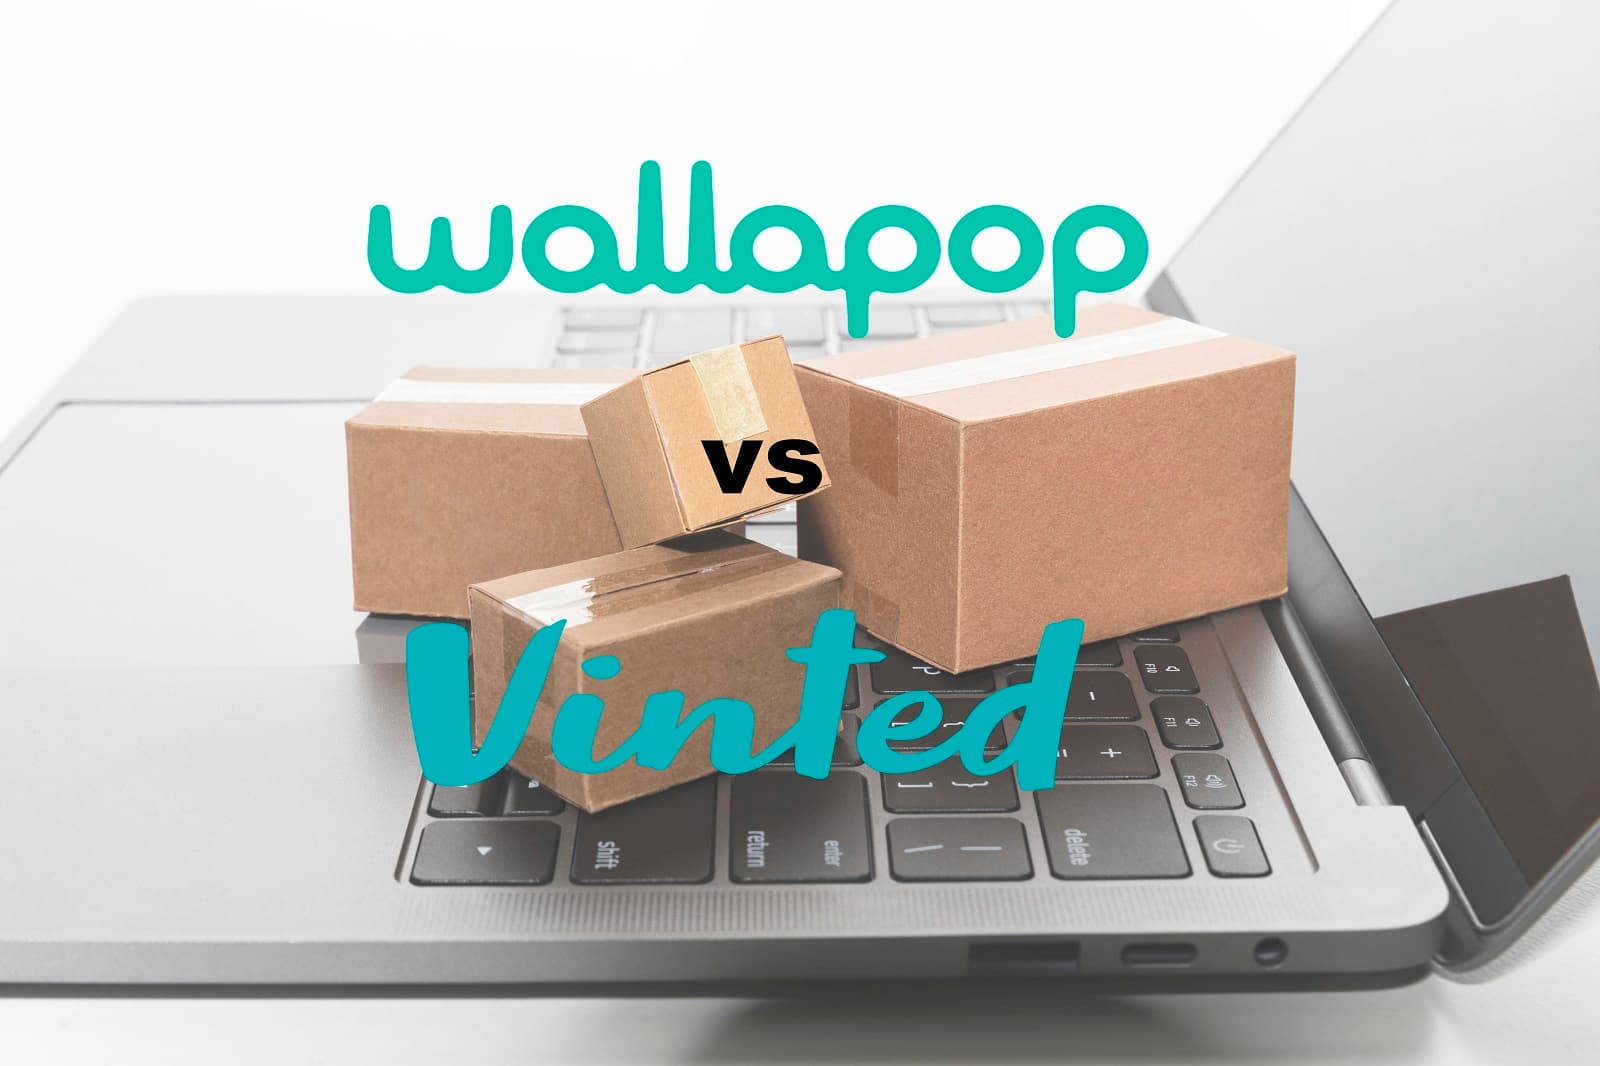 Vinted o Wallapop? Comparativa APPs venta de artículos de 2ª